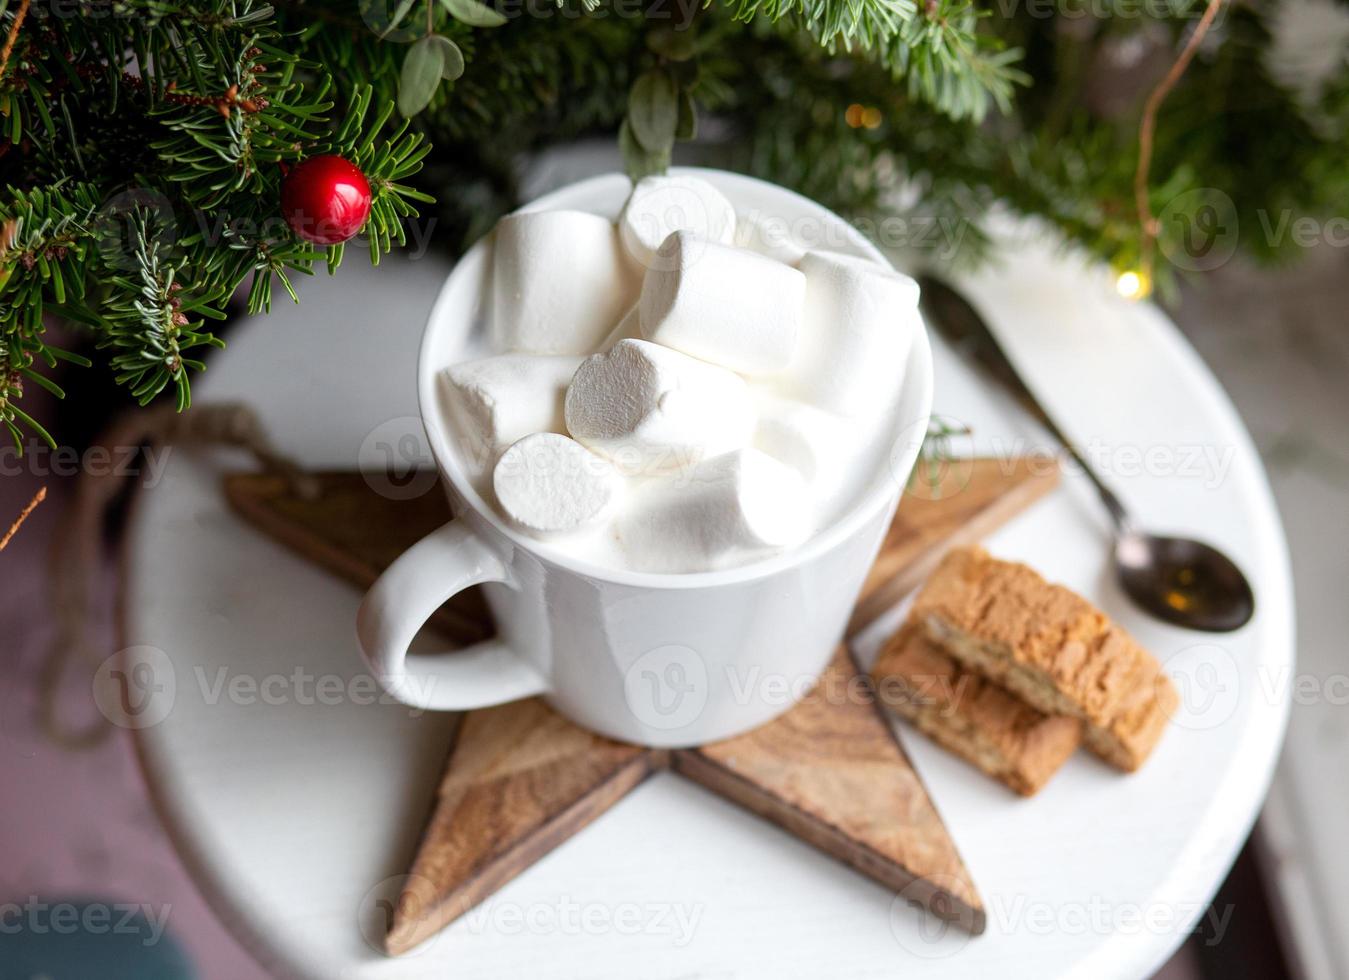 café em uma xícara branca com marshmallows. café festivo da manhã com biscoitos de amêndoa cantuccini italianos tradicionais. uma xícara de café em um fundo de ramos de abeto verde em um carrinho branco. foto